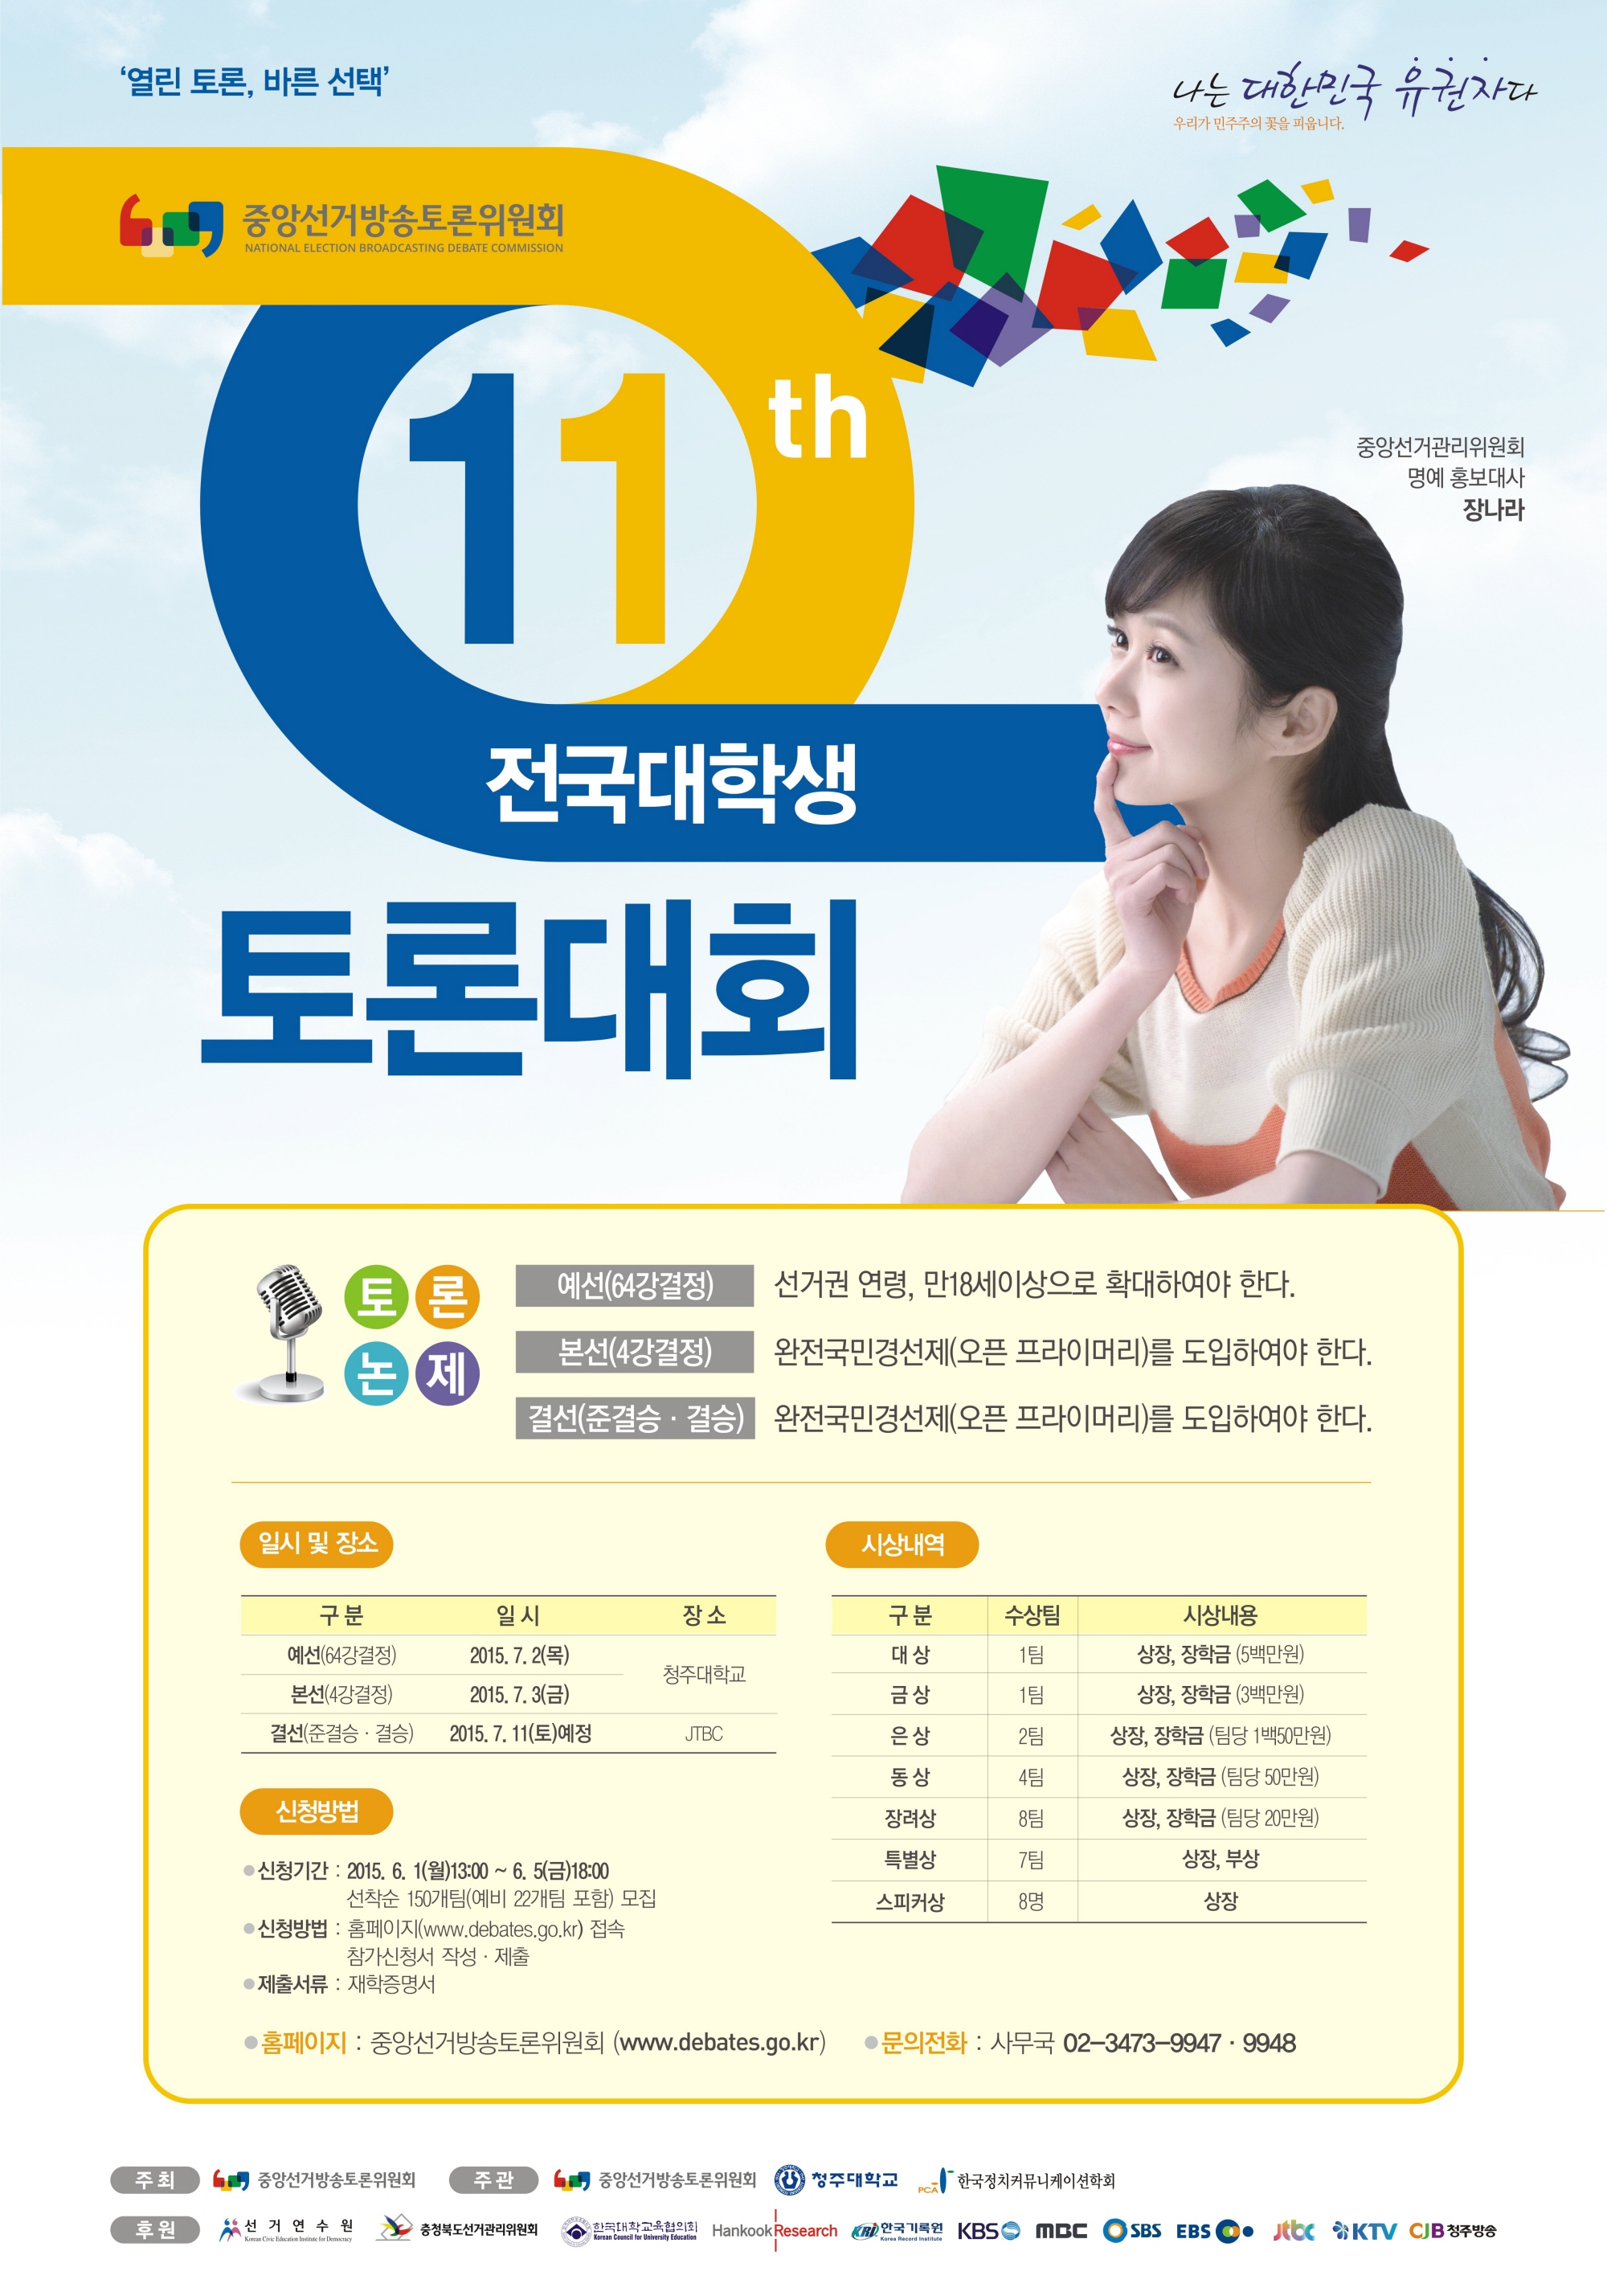 중앙선거방송토론위원회가 개최하는 제11회 전국대학생토론대회 포스터입니다. 자세한 내용은 아래를 참조하세요.